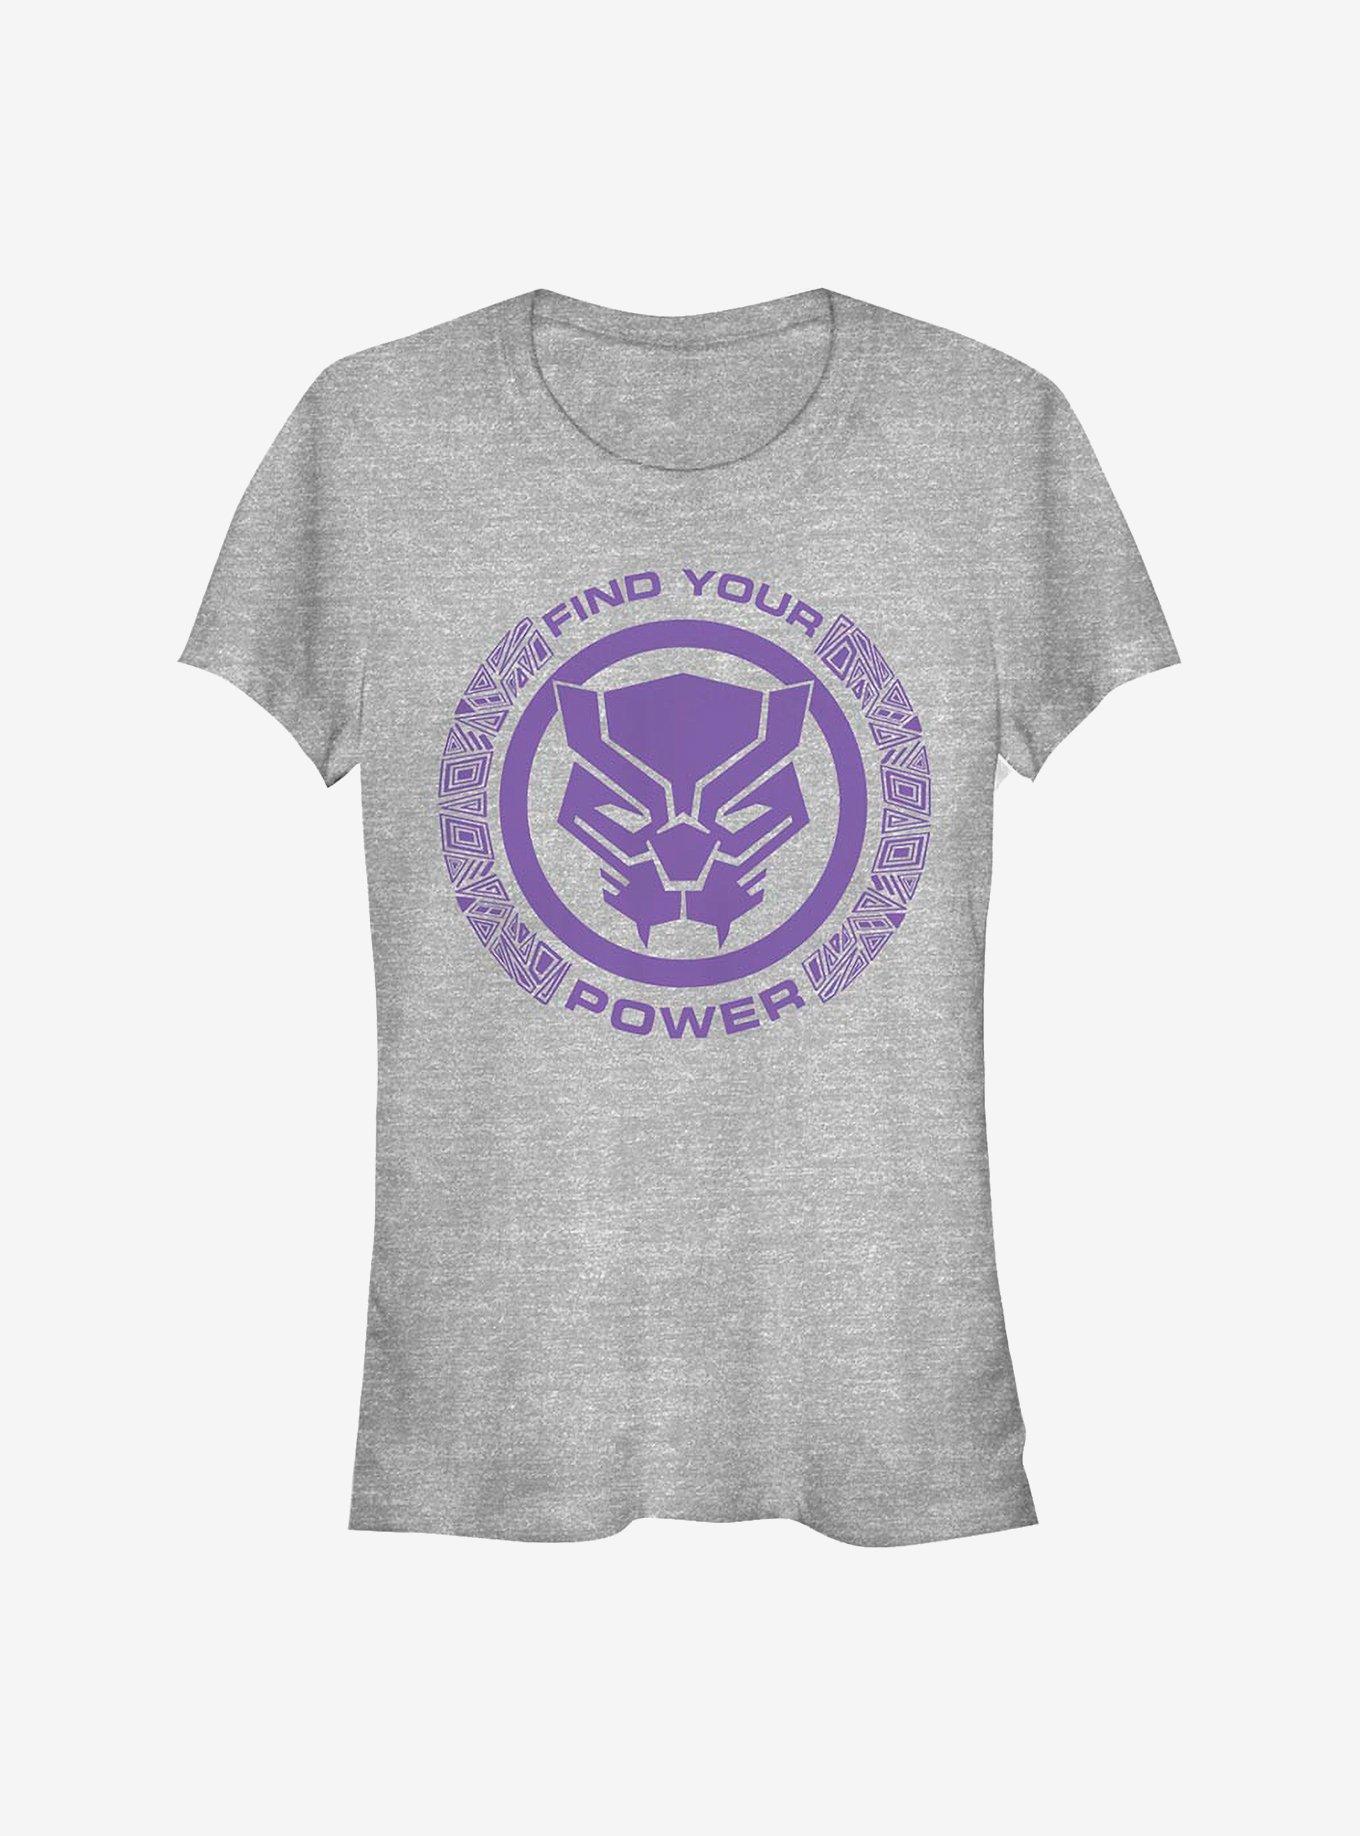 Marvel Black Panther Power Girls T-Shirt, ATH HTR, hi-res